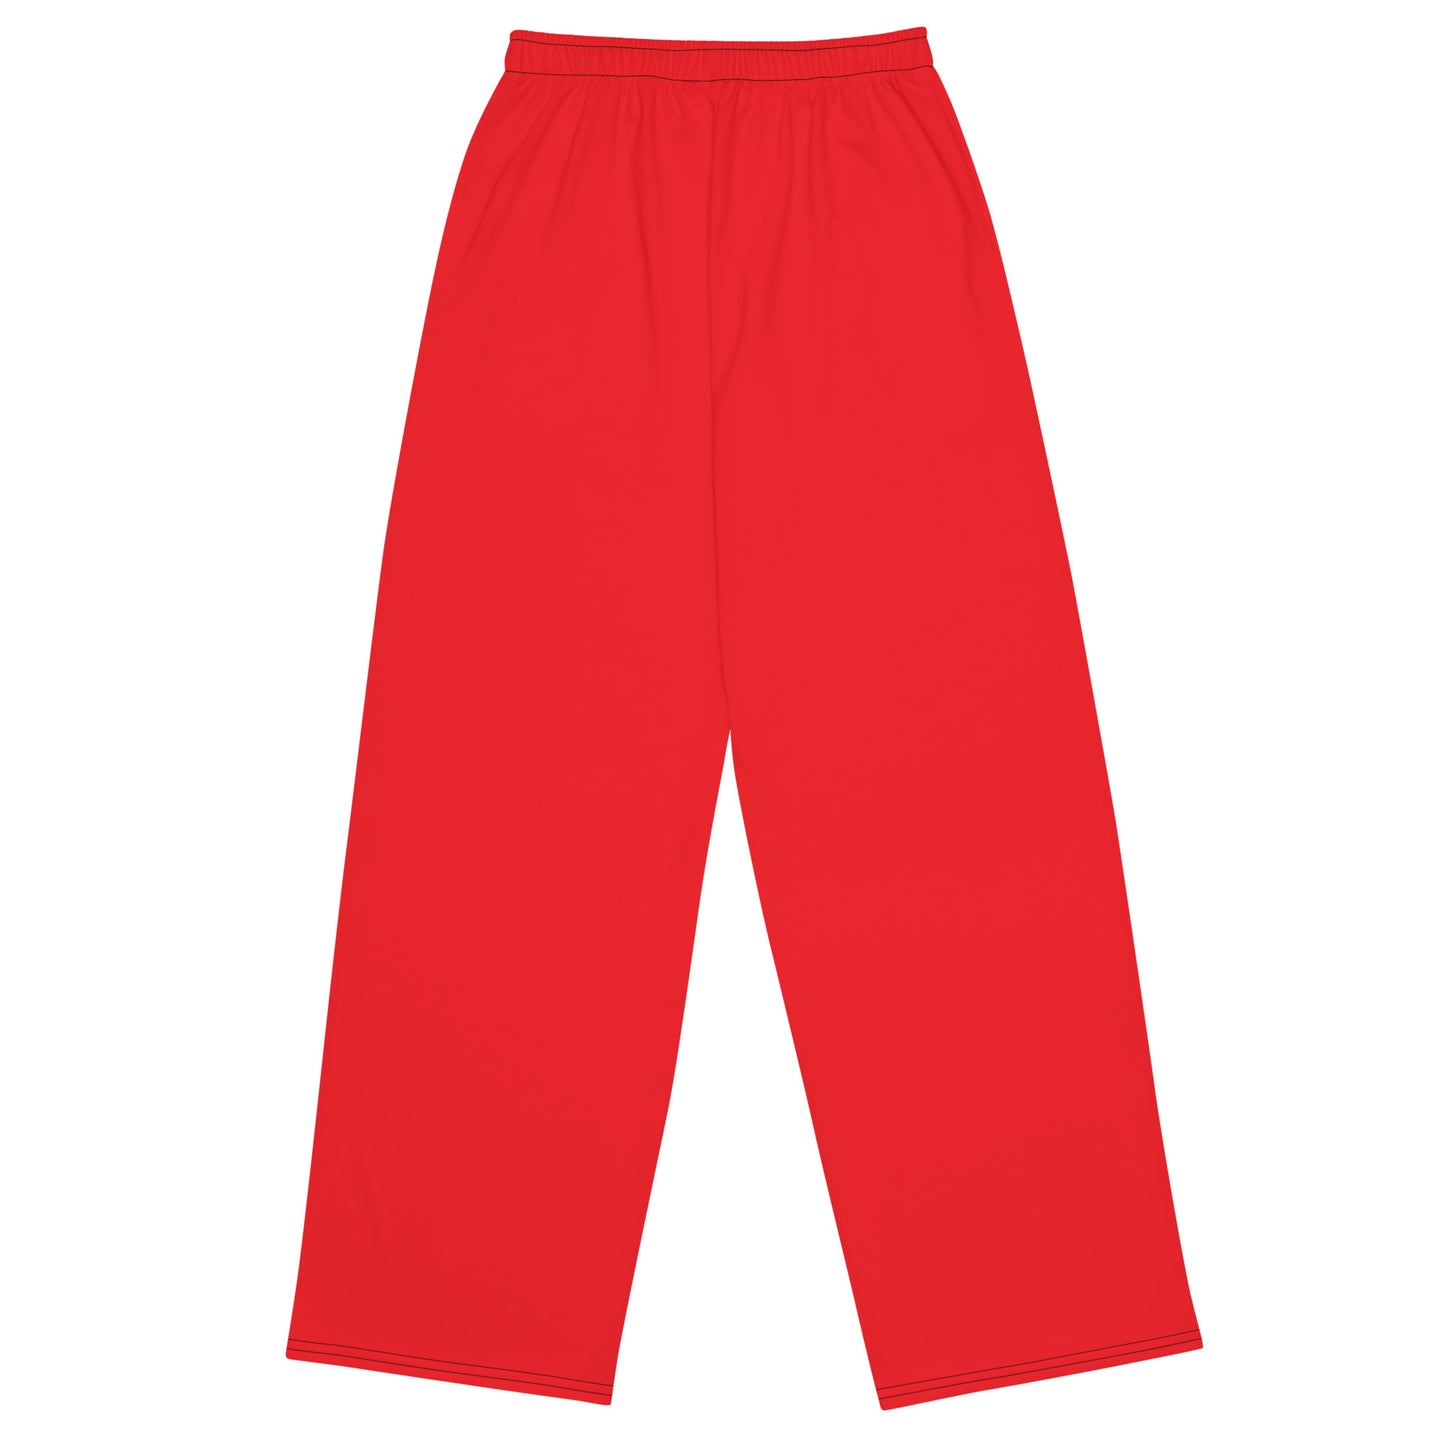 Pantalon unisexe rouge - OG Hippie Chick